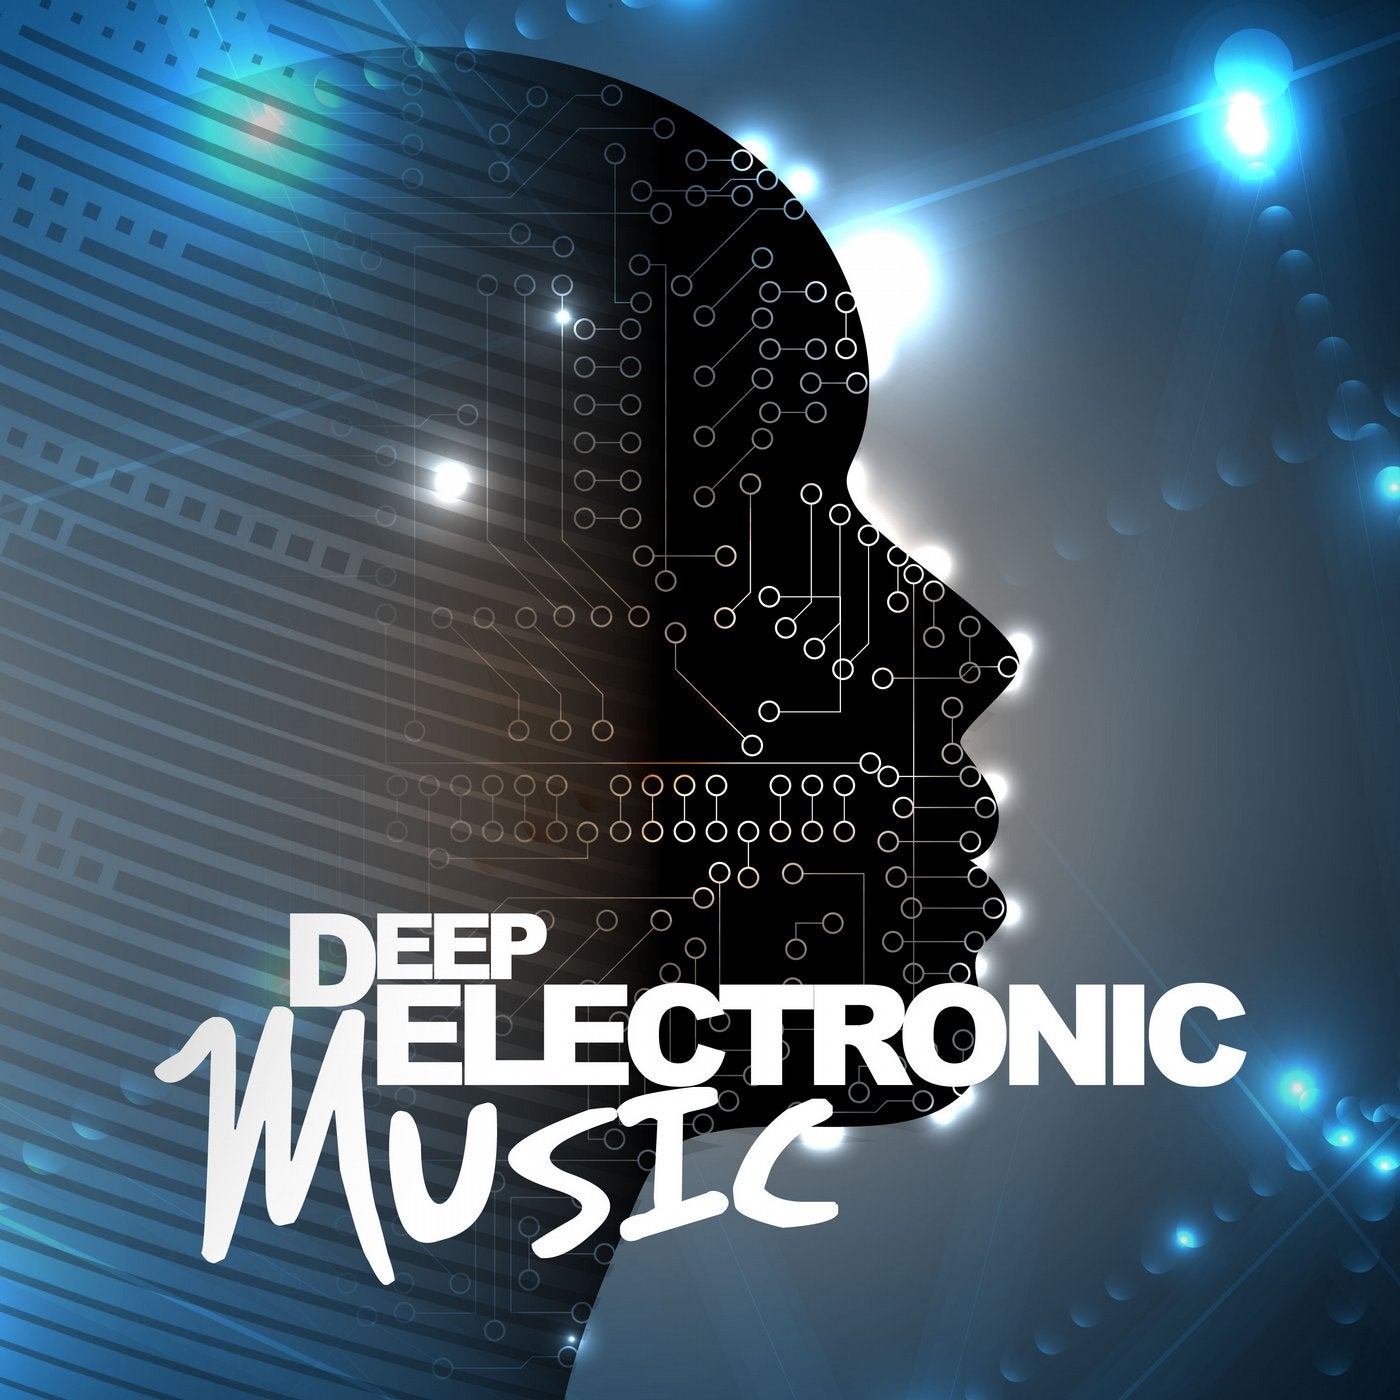 Deep Electronic Music